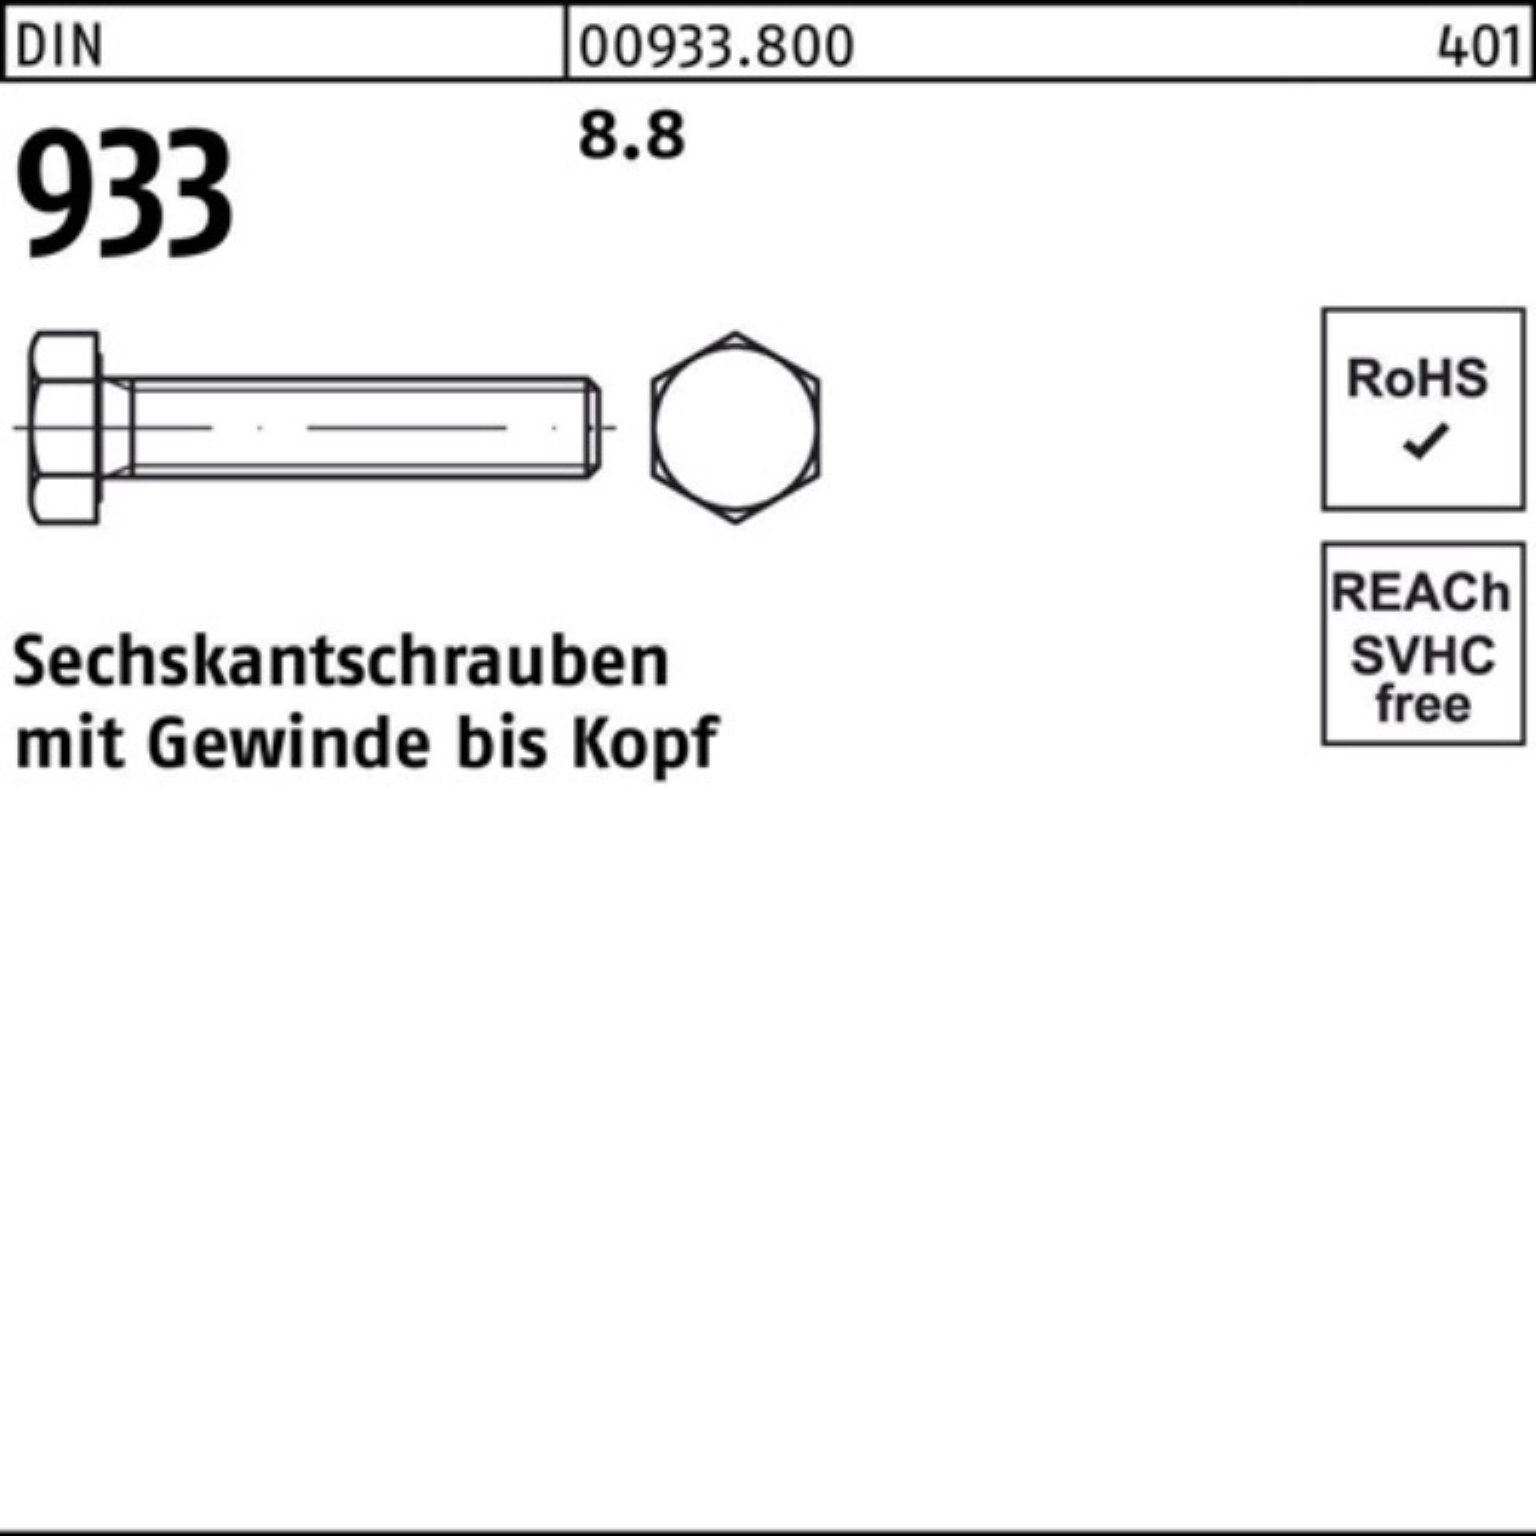 Reyher Sechskantschraube 100er 933 Sechskantschraube VG 120 933 Pack 8.8 DIN M39x DIN Stück 1